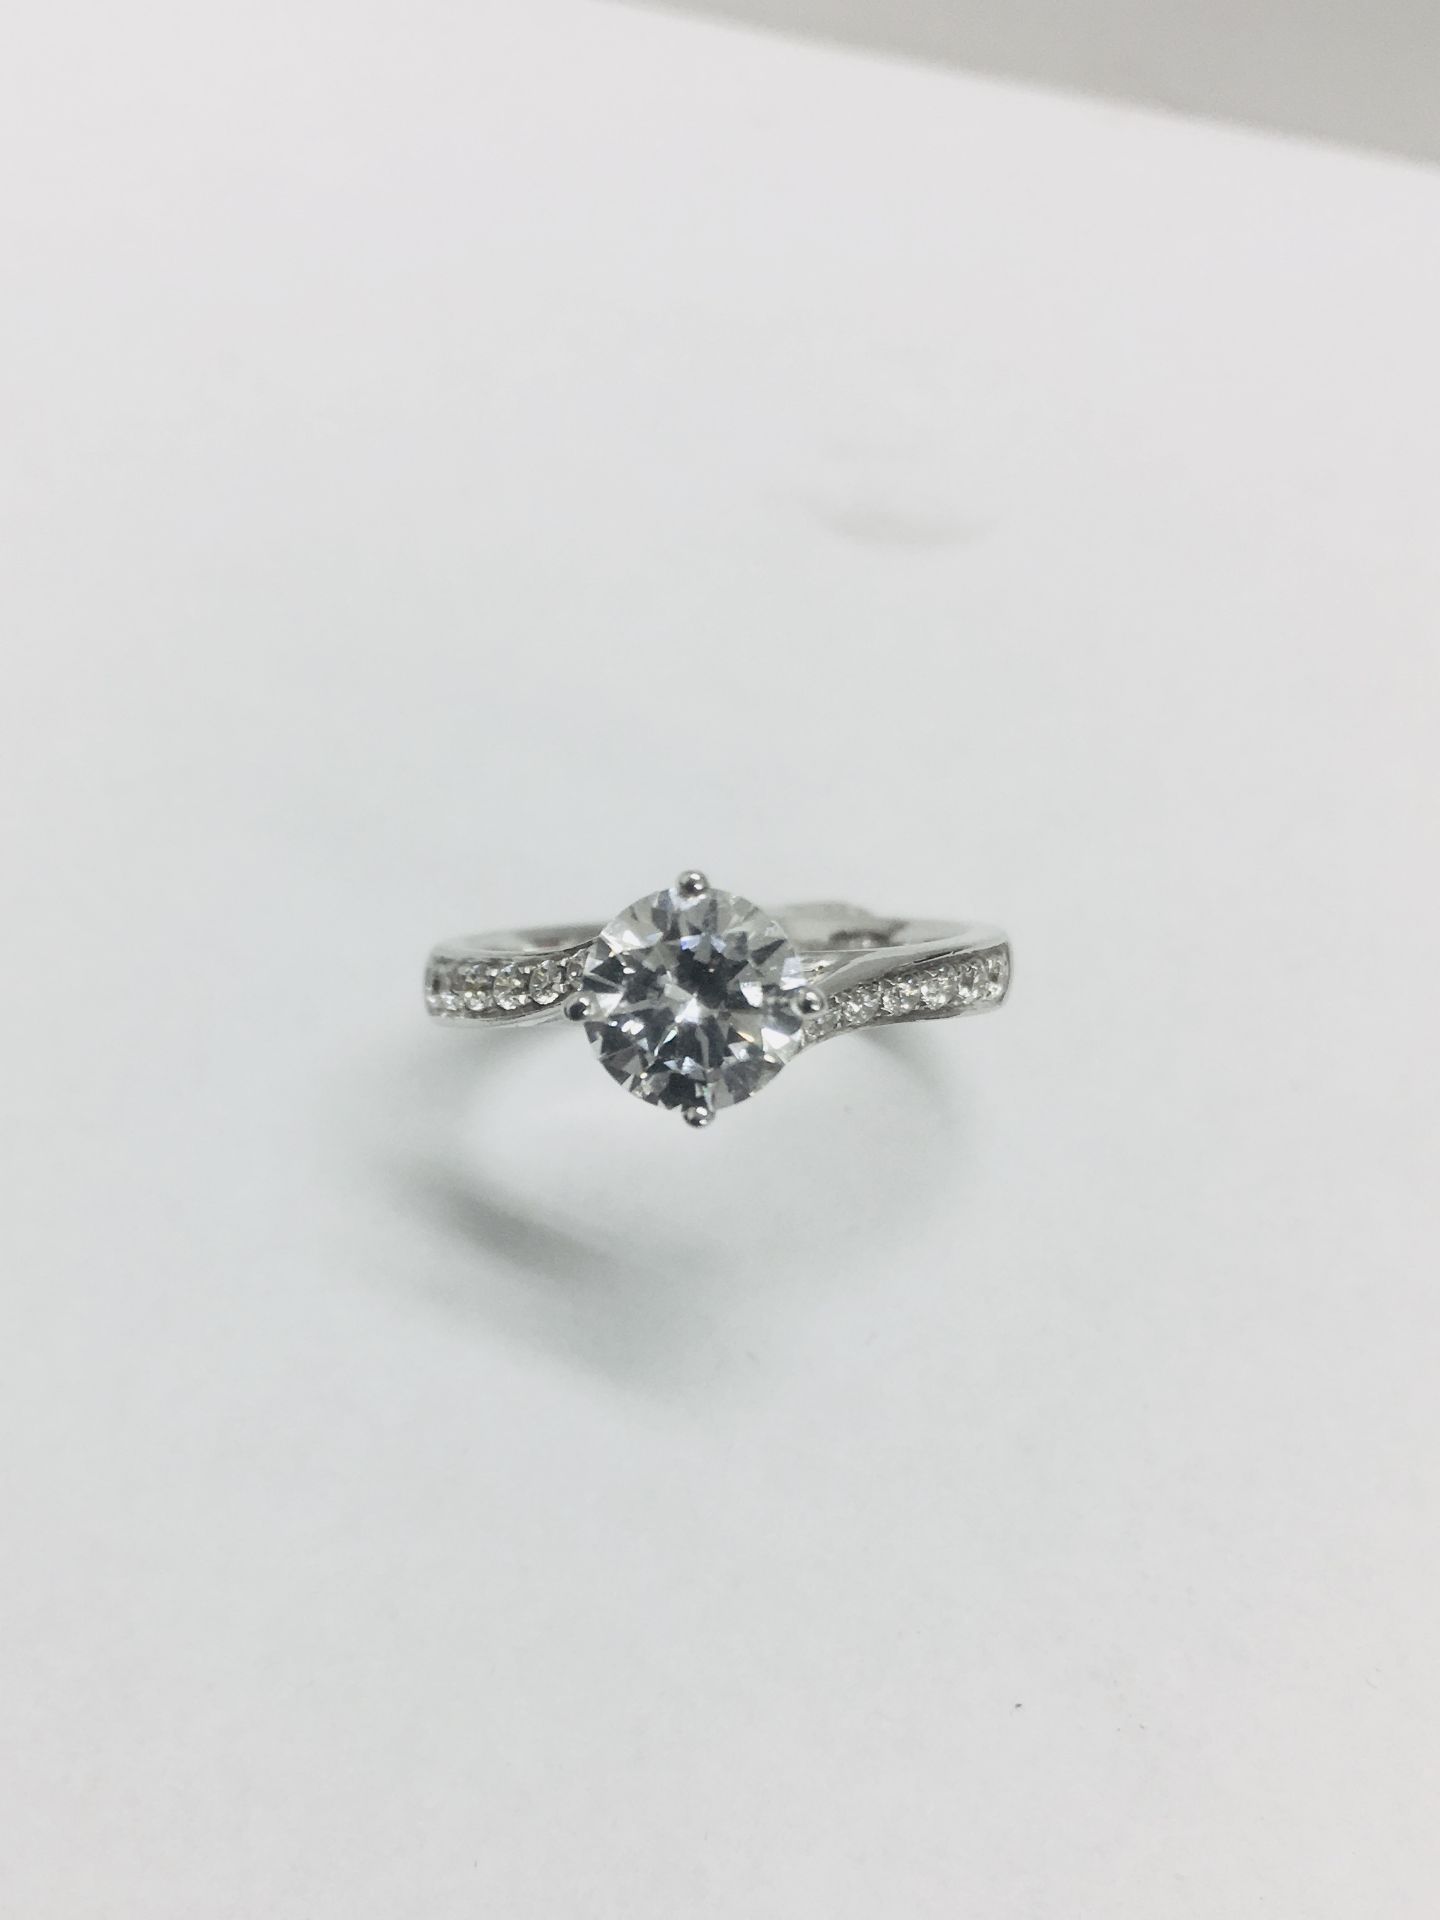 Platinum twist diamond solitaire ring,0.50ct brilliant cut diamond,h colour vs clarity - Bild 5 aus 6